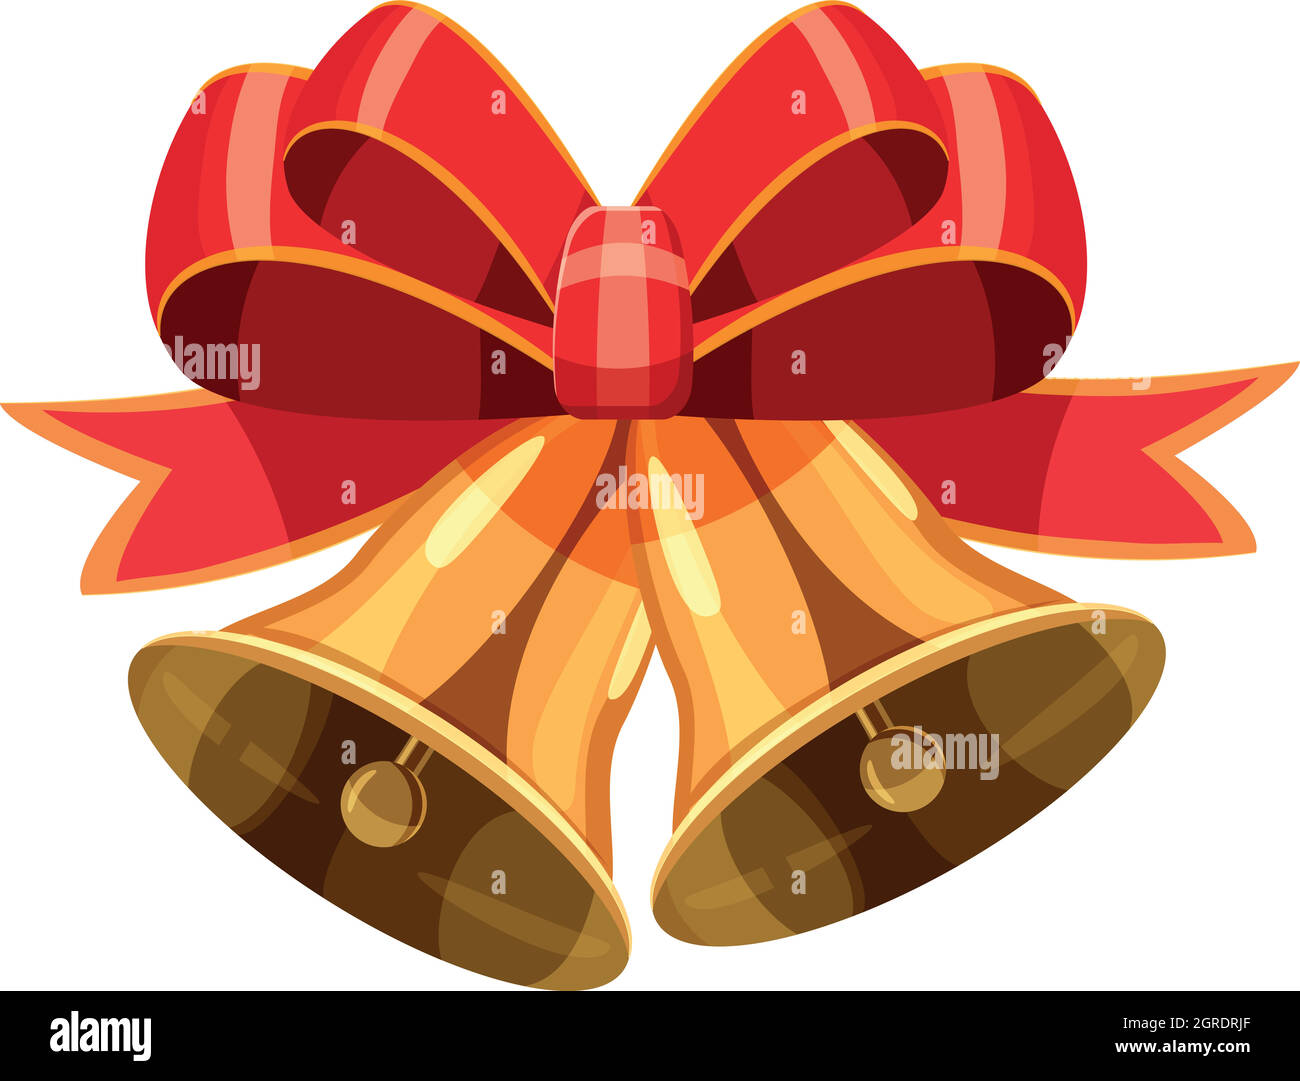 Weihnachtsglocken mit roter Schleife-Symbol, Cartoon-Stil Stock Vektor